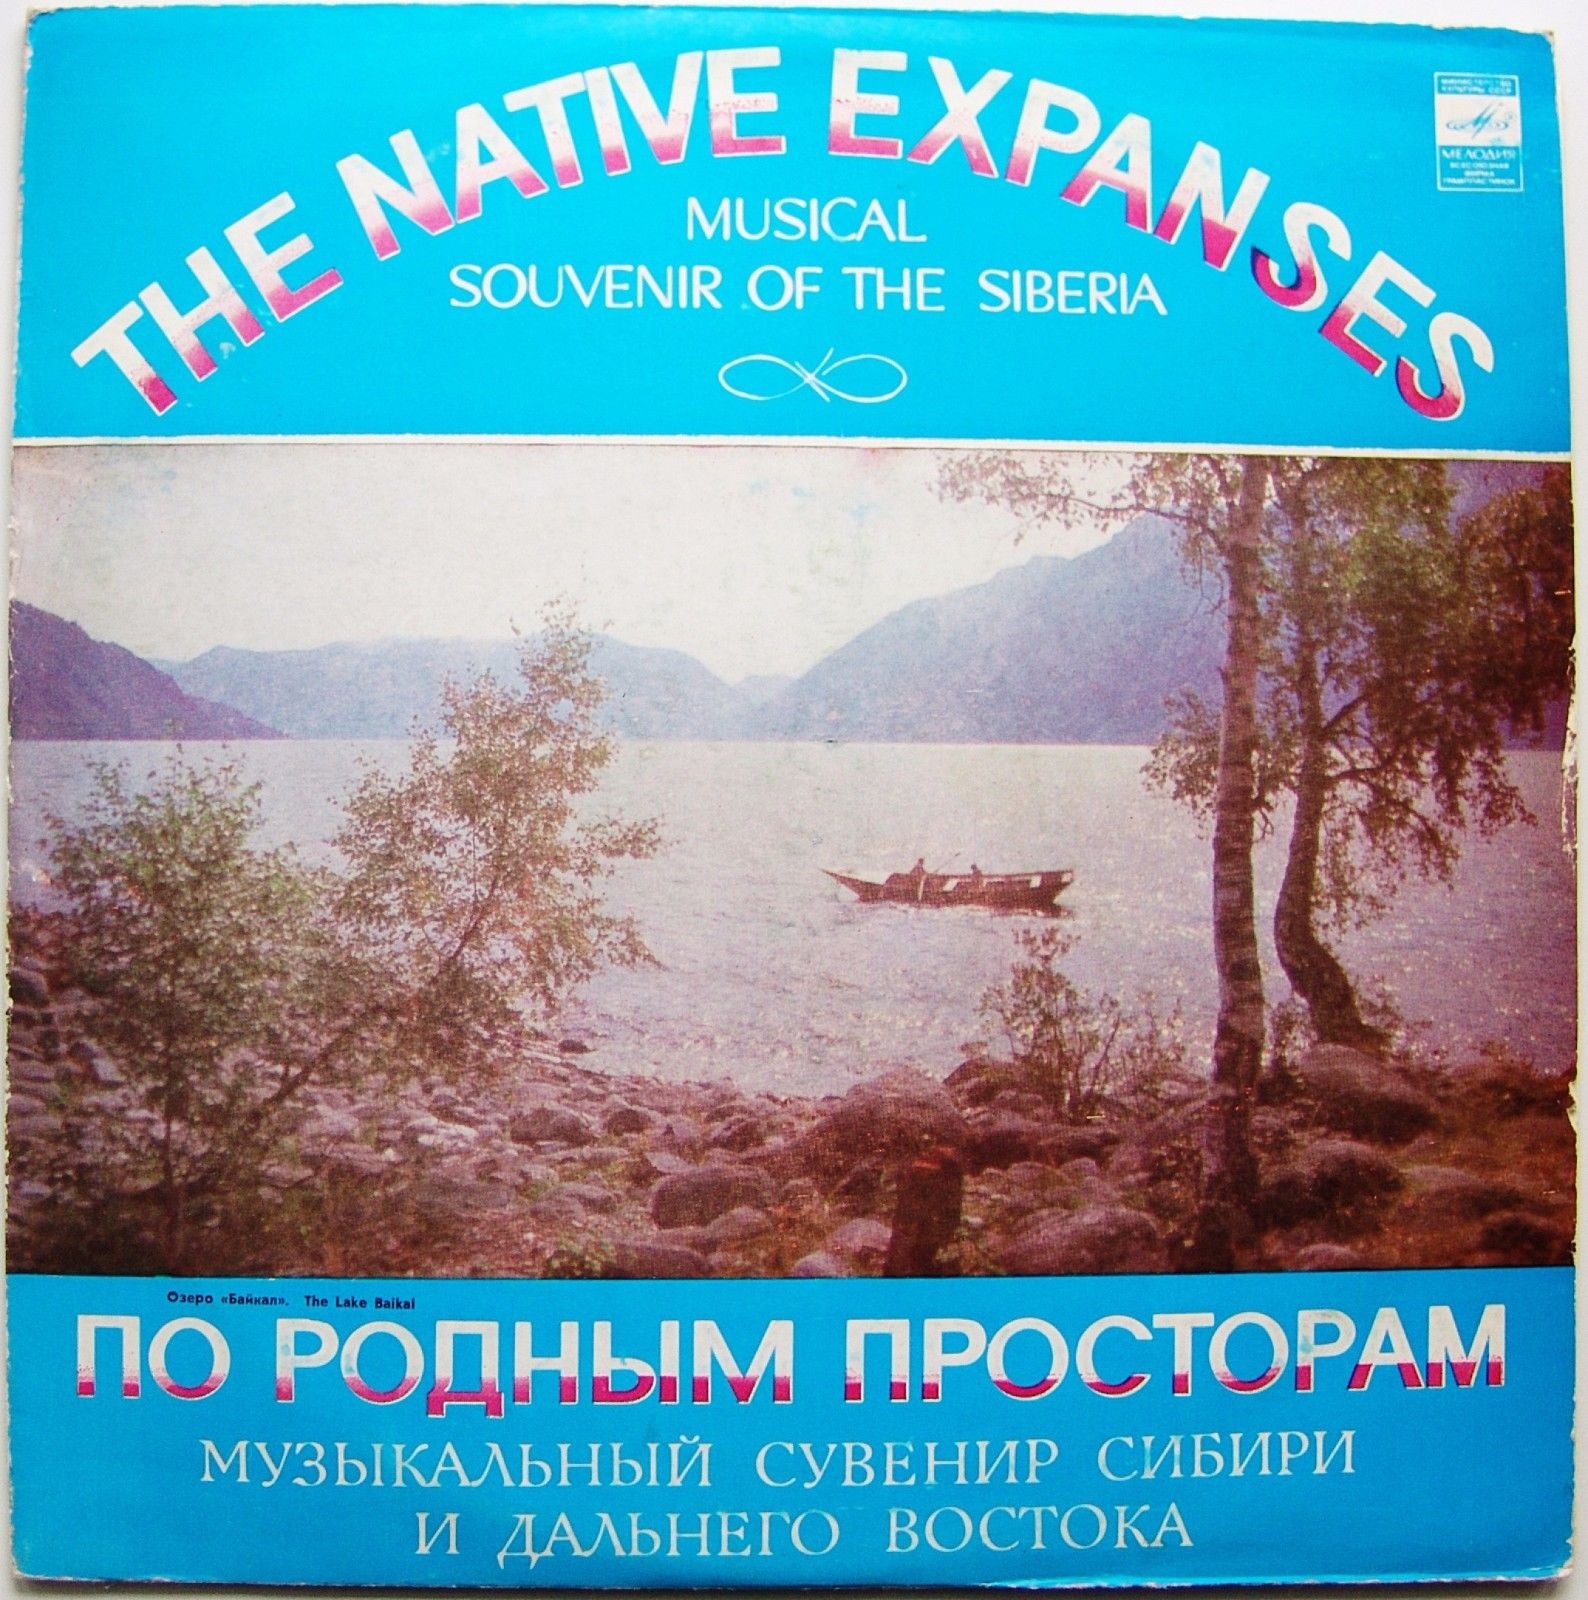 ПО РОДНЫМ ПРОСТОРАМ (музыкальный сувенир Сибири и Дальнего Востока)